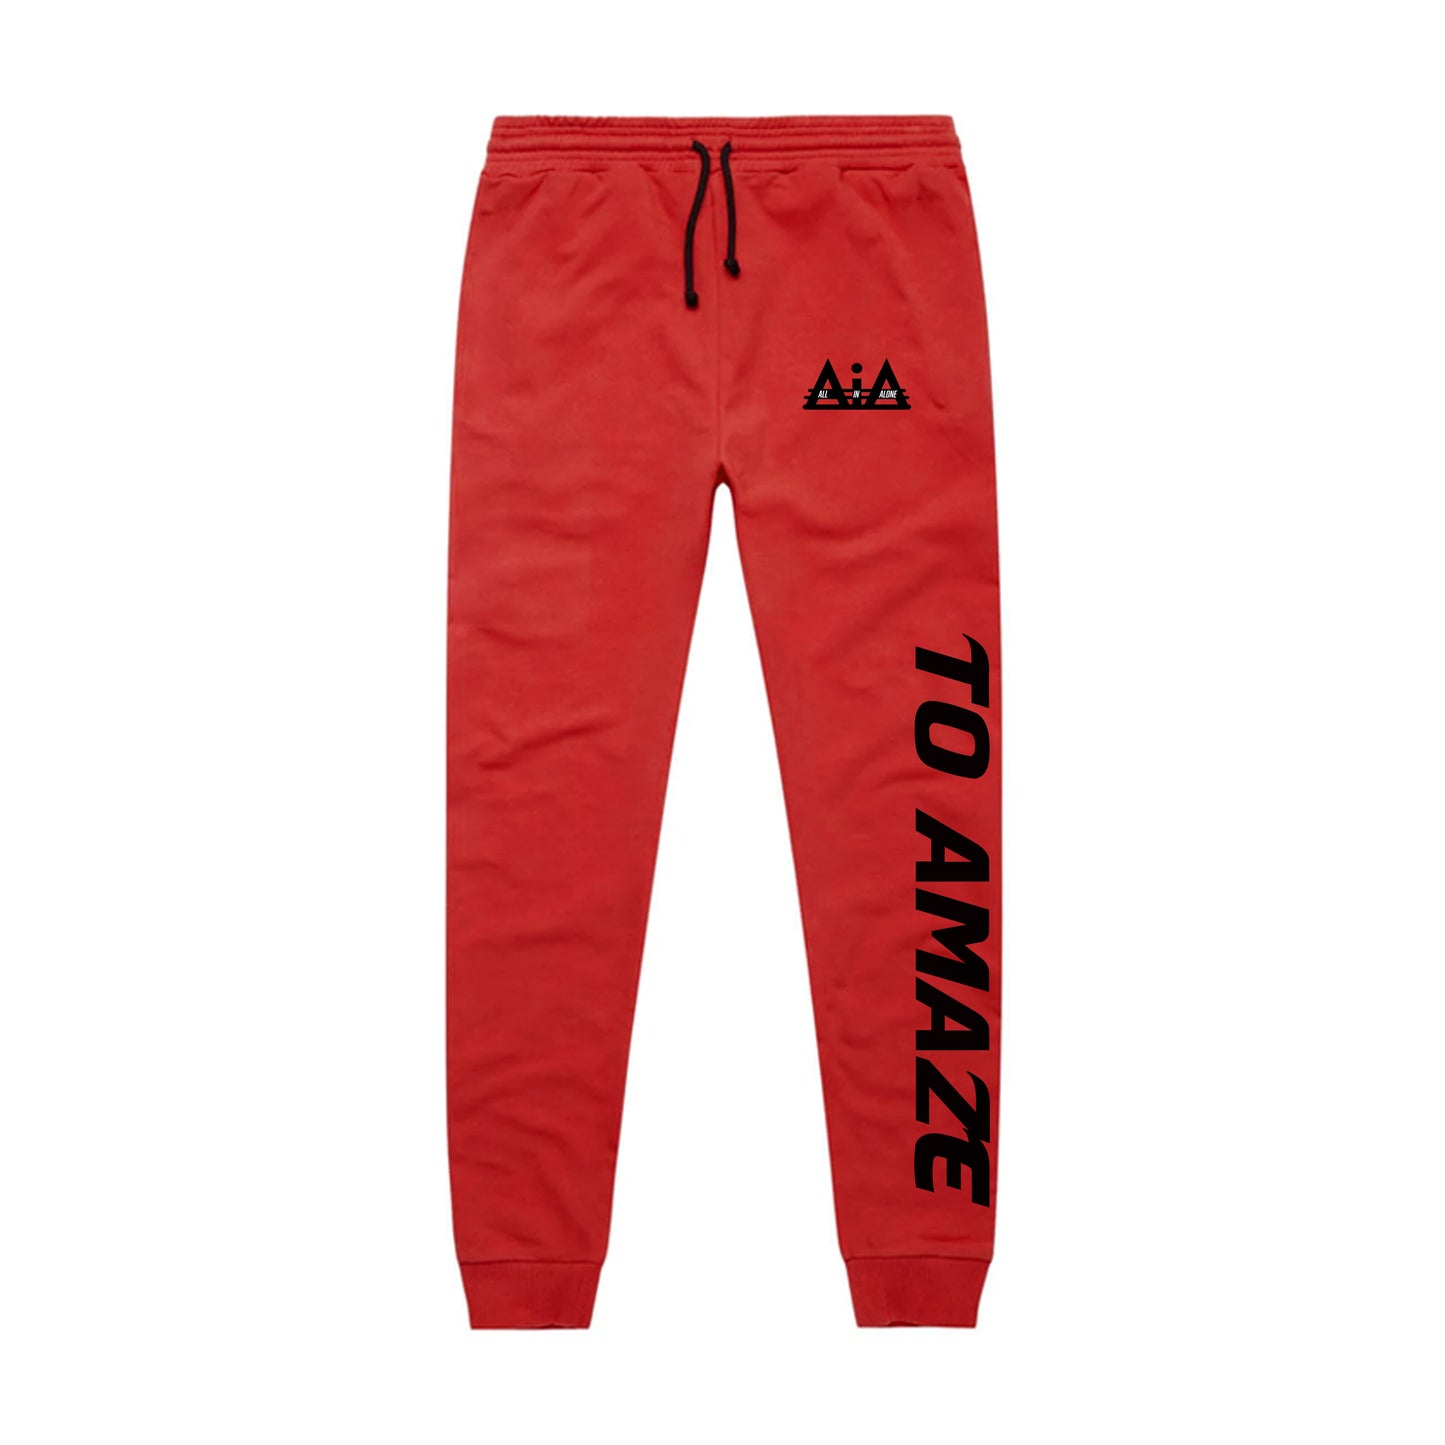 RED/BLACK AiA joggersuit pants